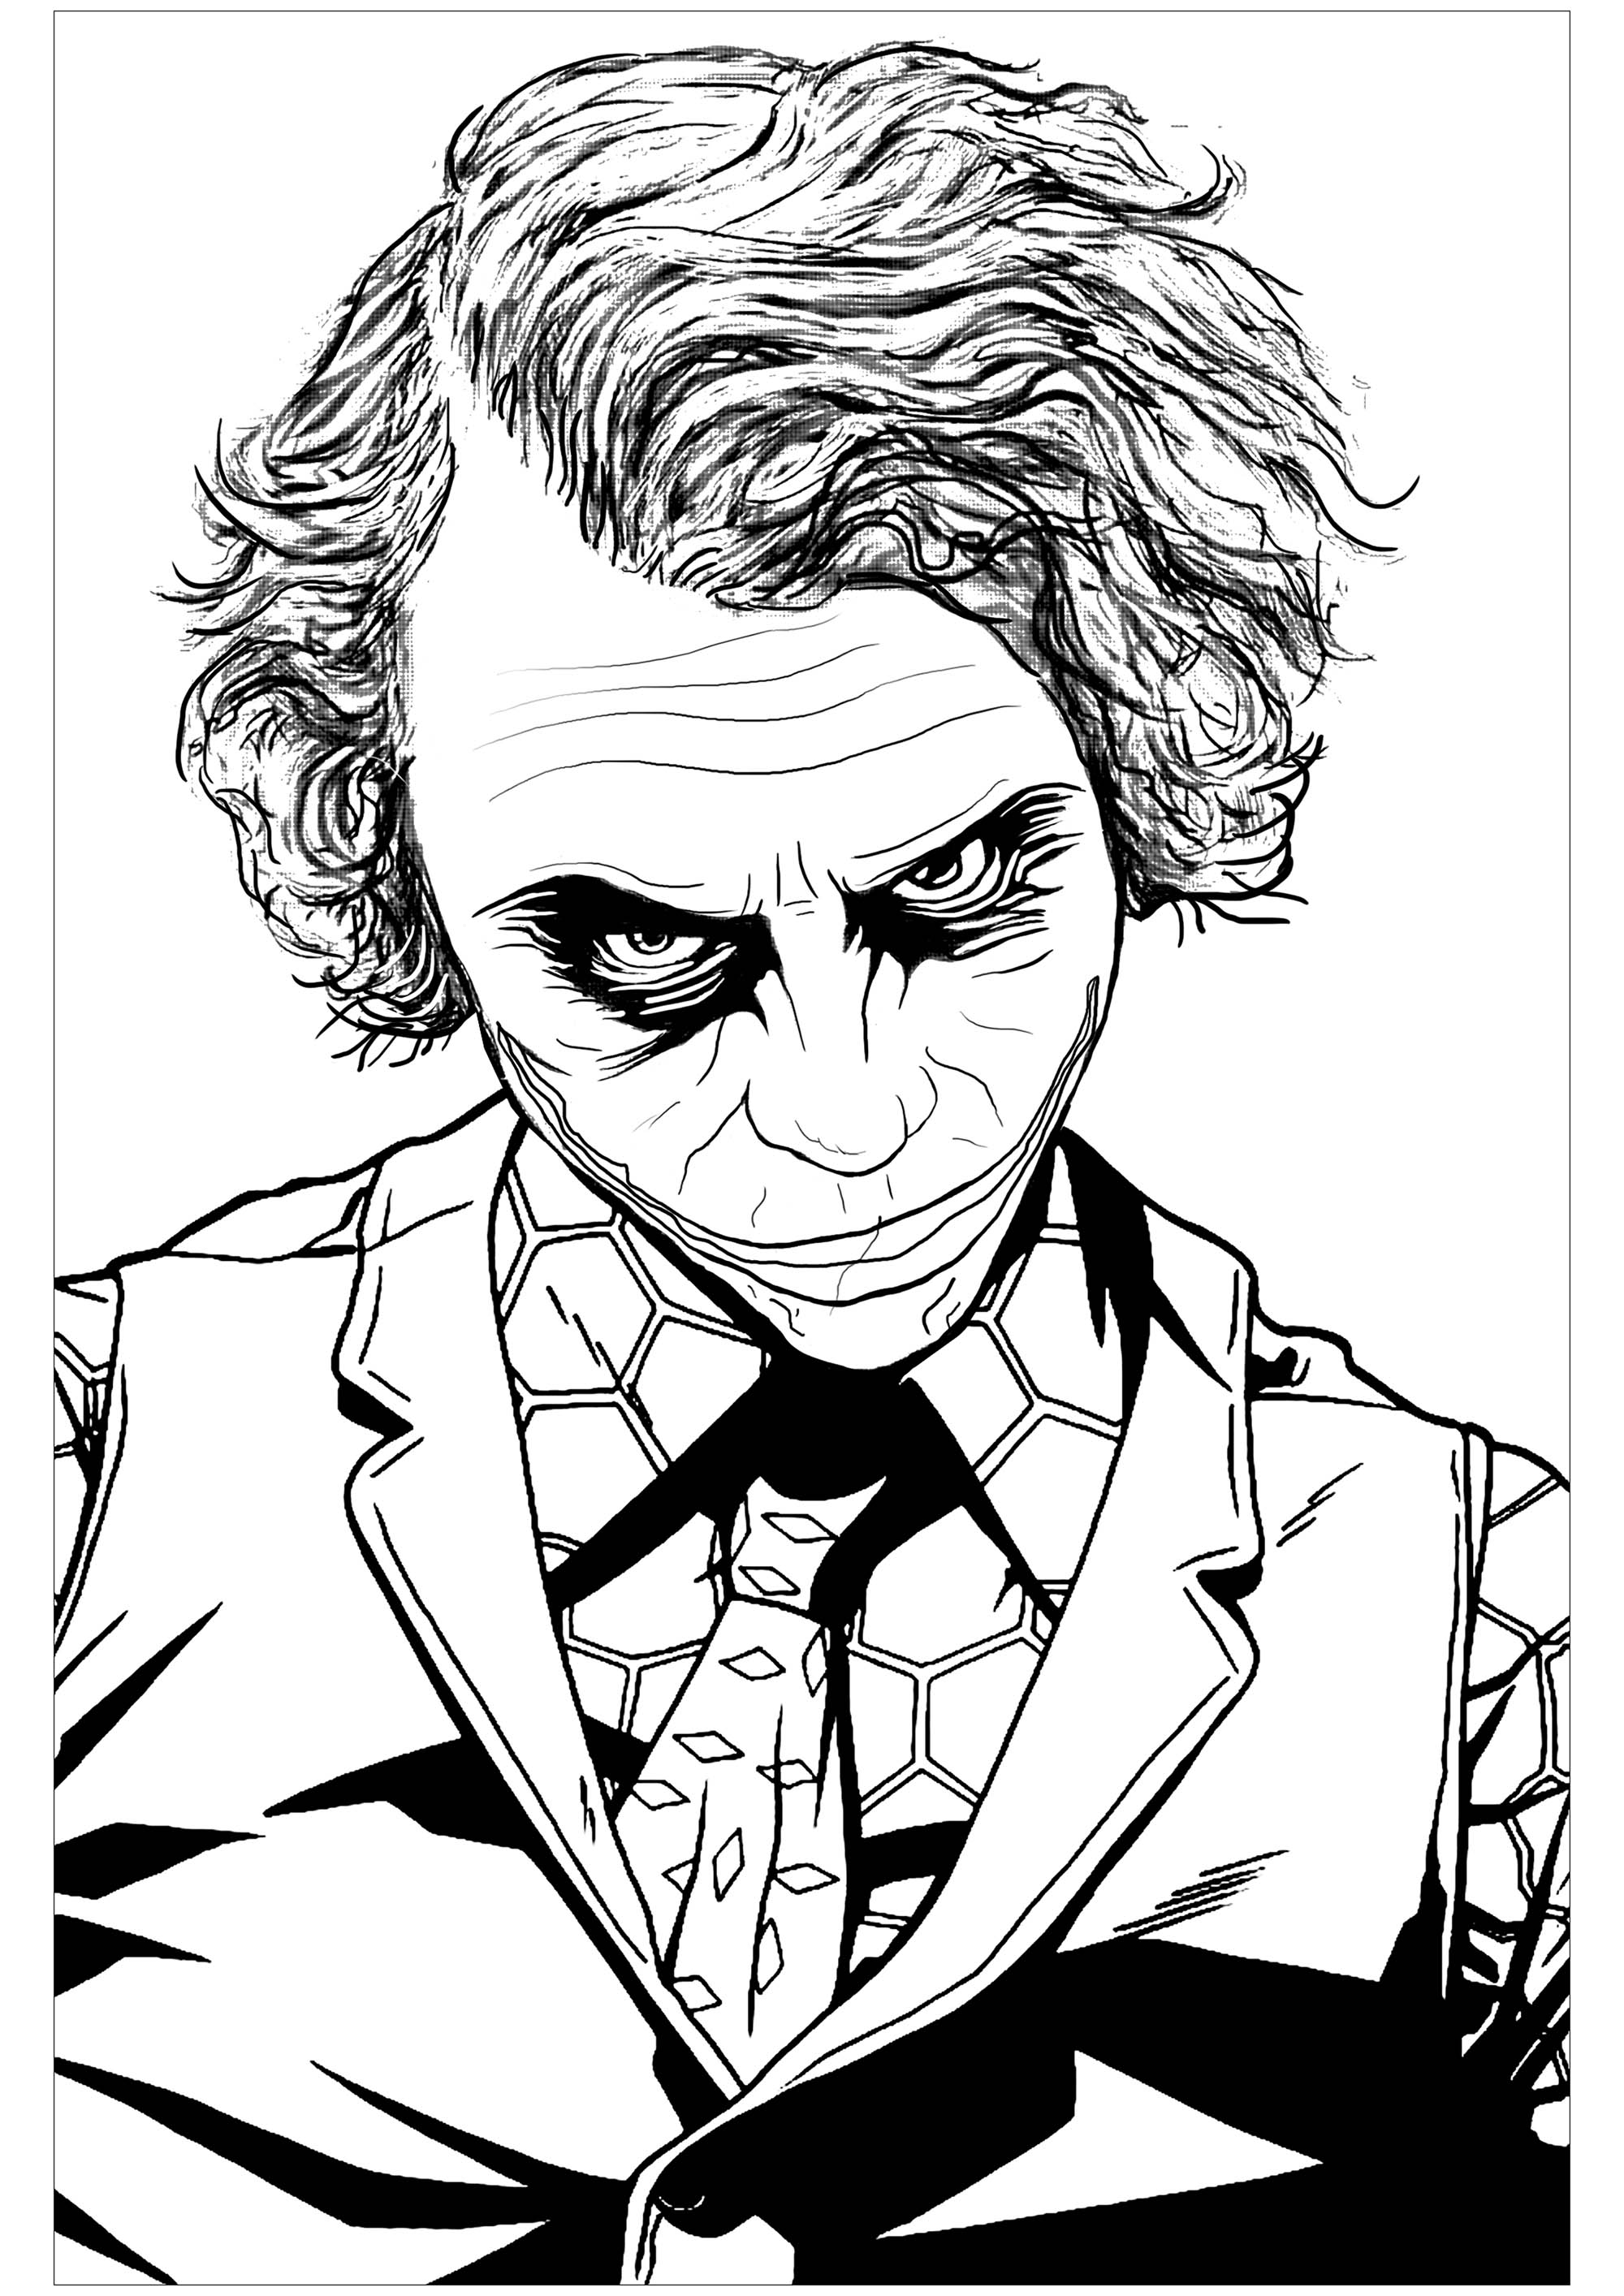 El Joker (Heath Ledger) - Películas - Colorear para Adultos